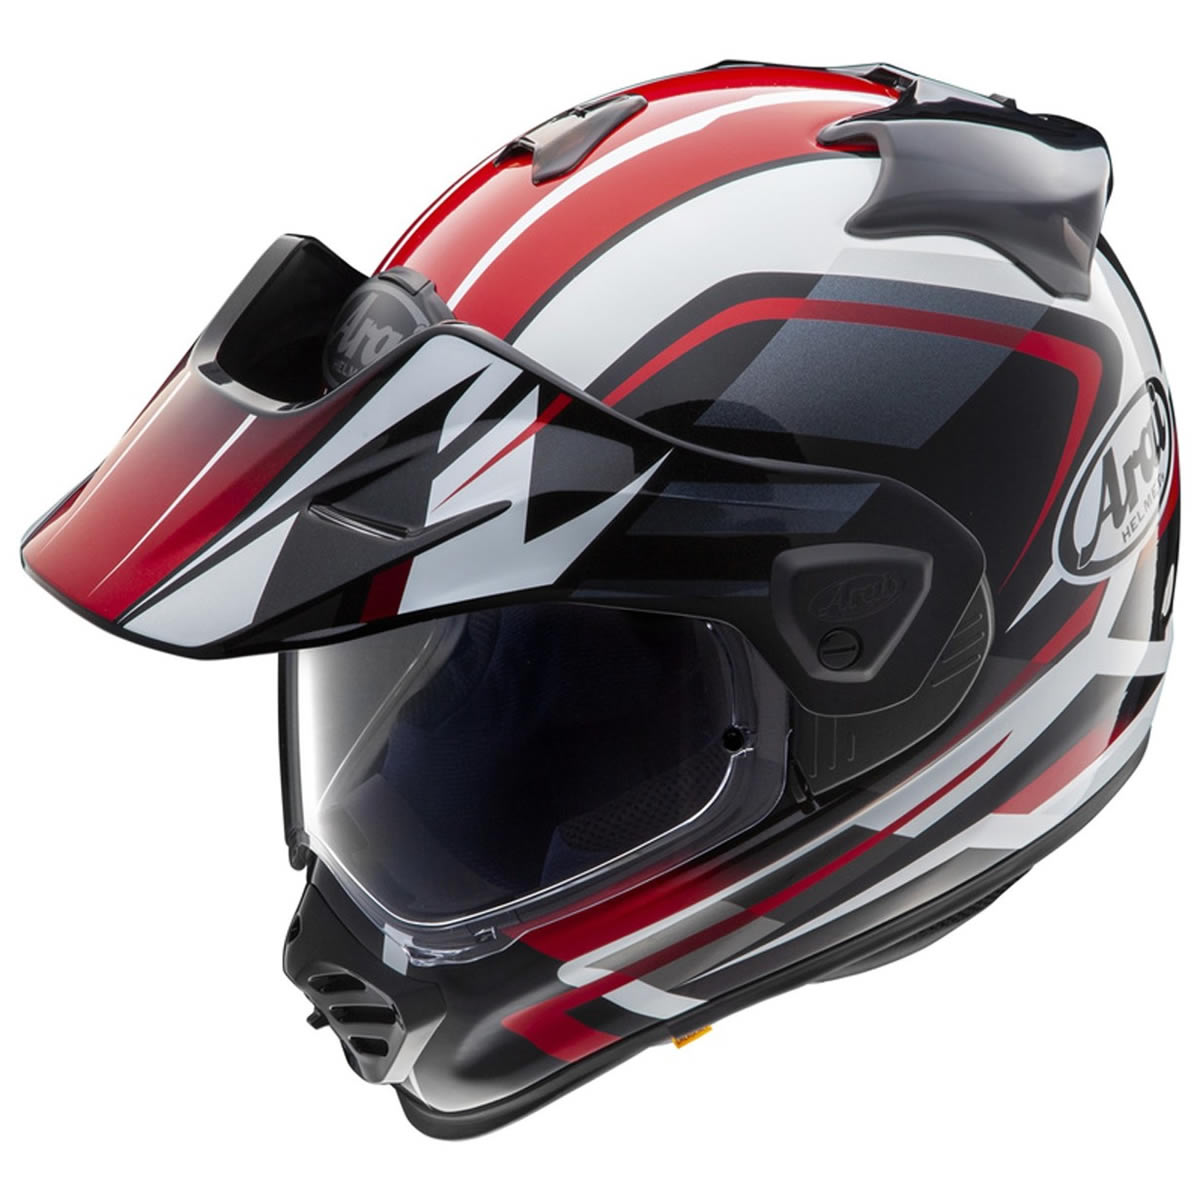 Arai Tour-X5 Discovery Red Helm, weiß-rot-schwarz